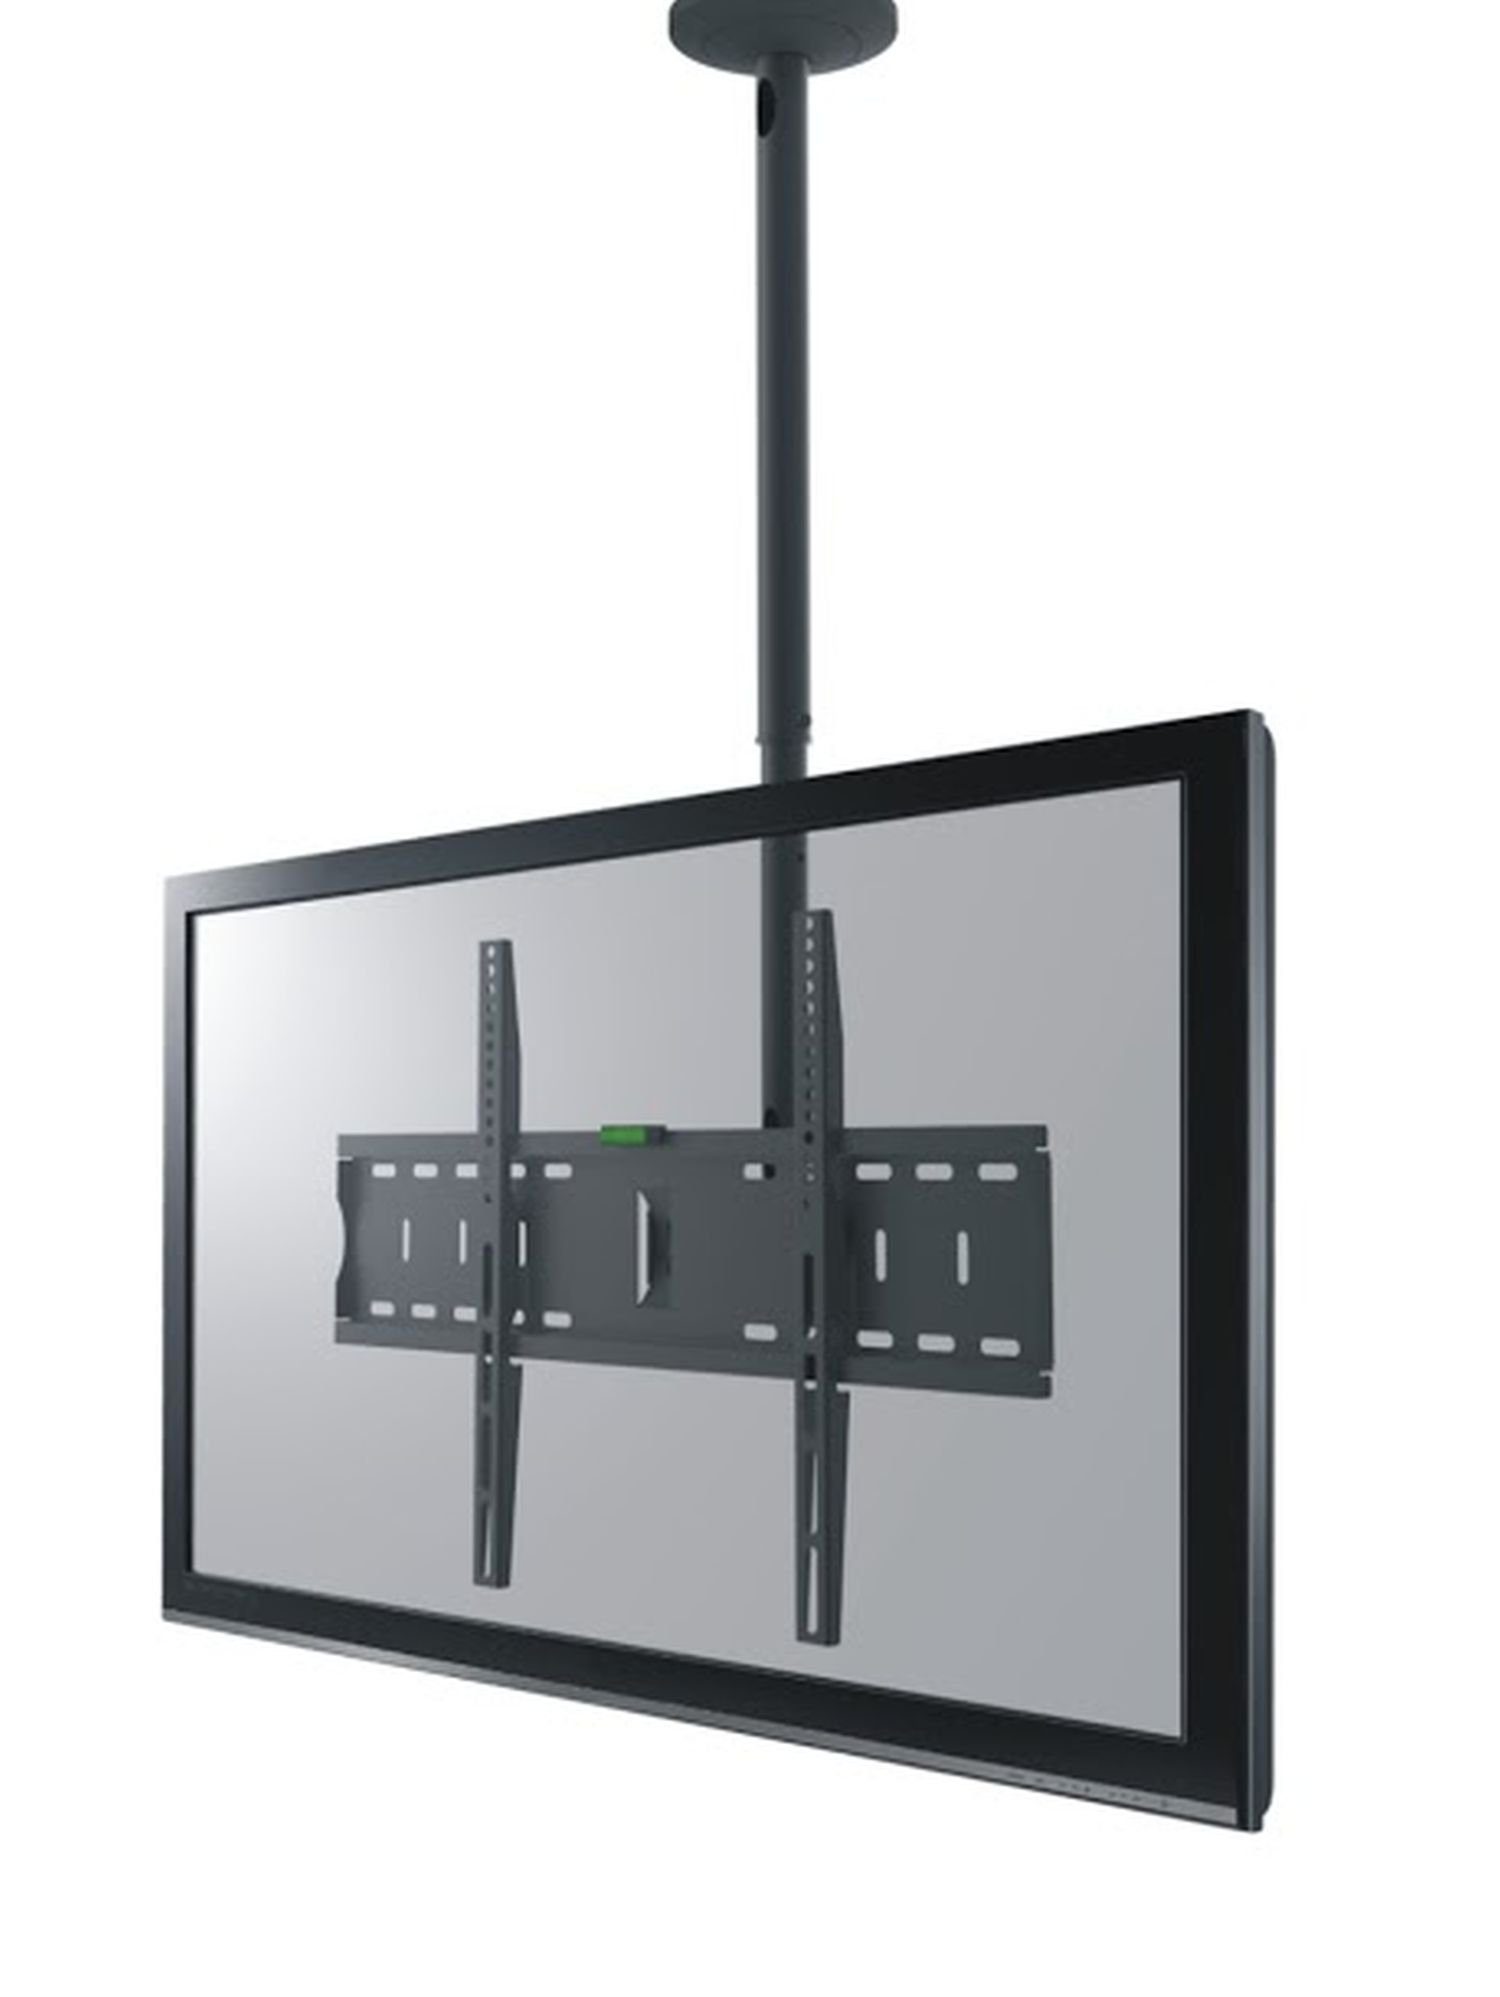 RED EAGLE Cinema Plus Zoll belastbar VESA kg Zoll, 30 600x400) Deckenhalter 32-70 - drehbar 70 bis (bis - schwenkbar TV-Deckenhalterung